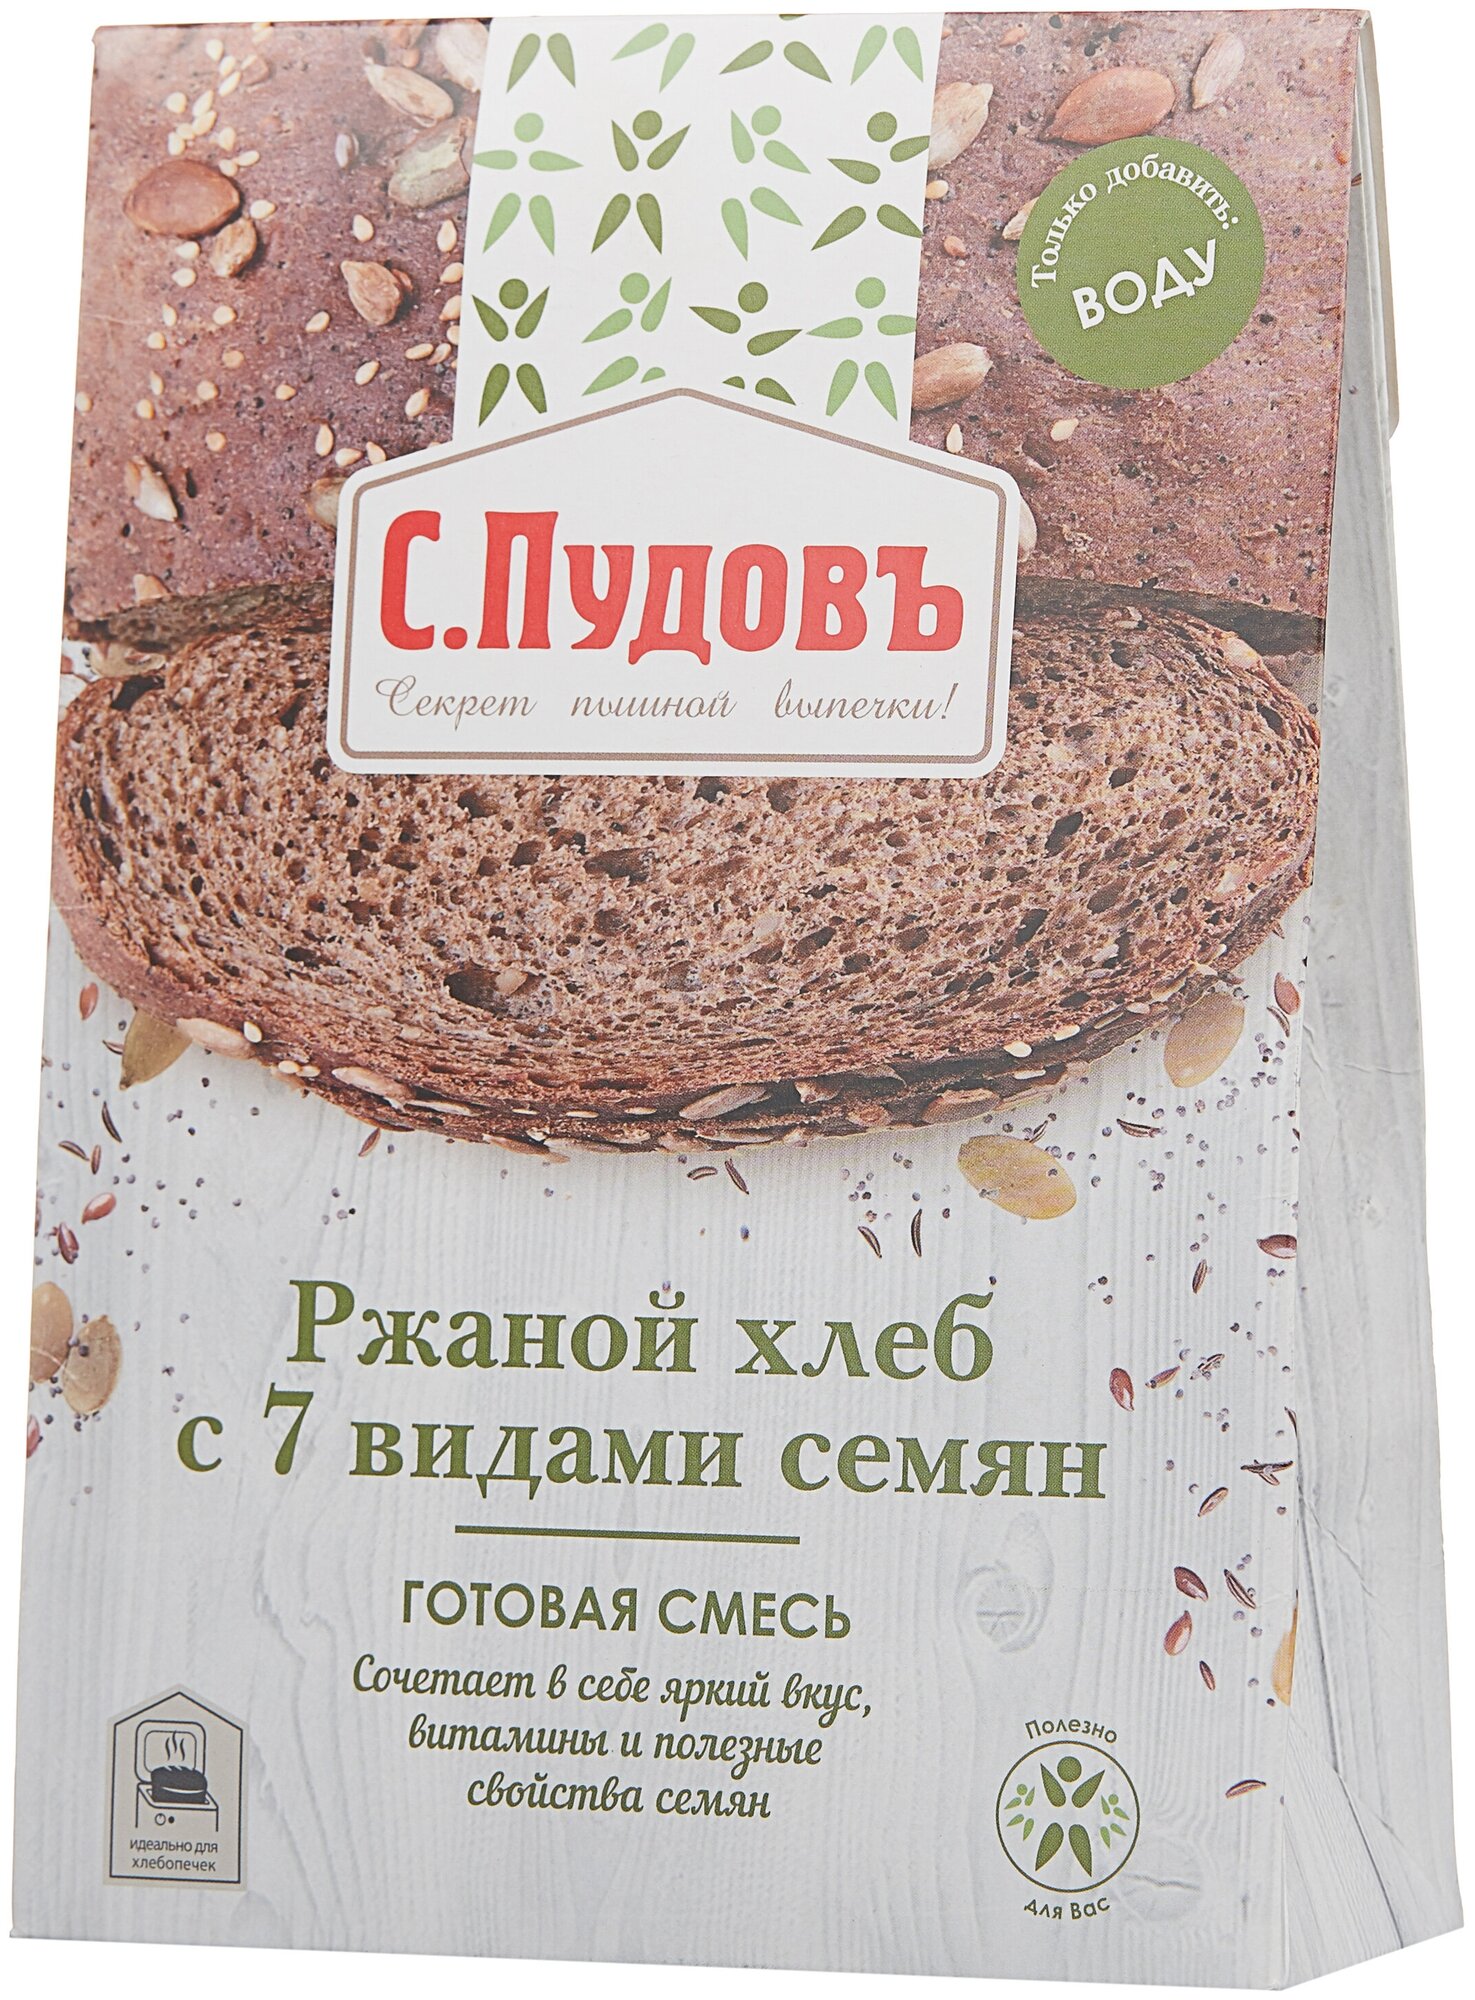 Ржаной хлеб с 7 видами семян С.Пудовъ, 500 г